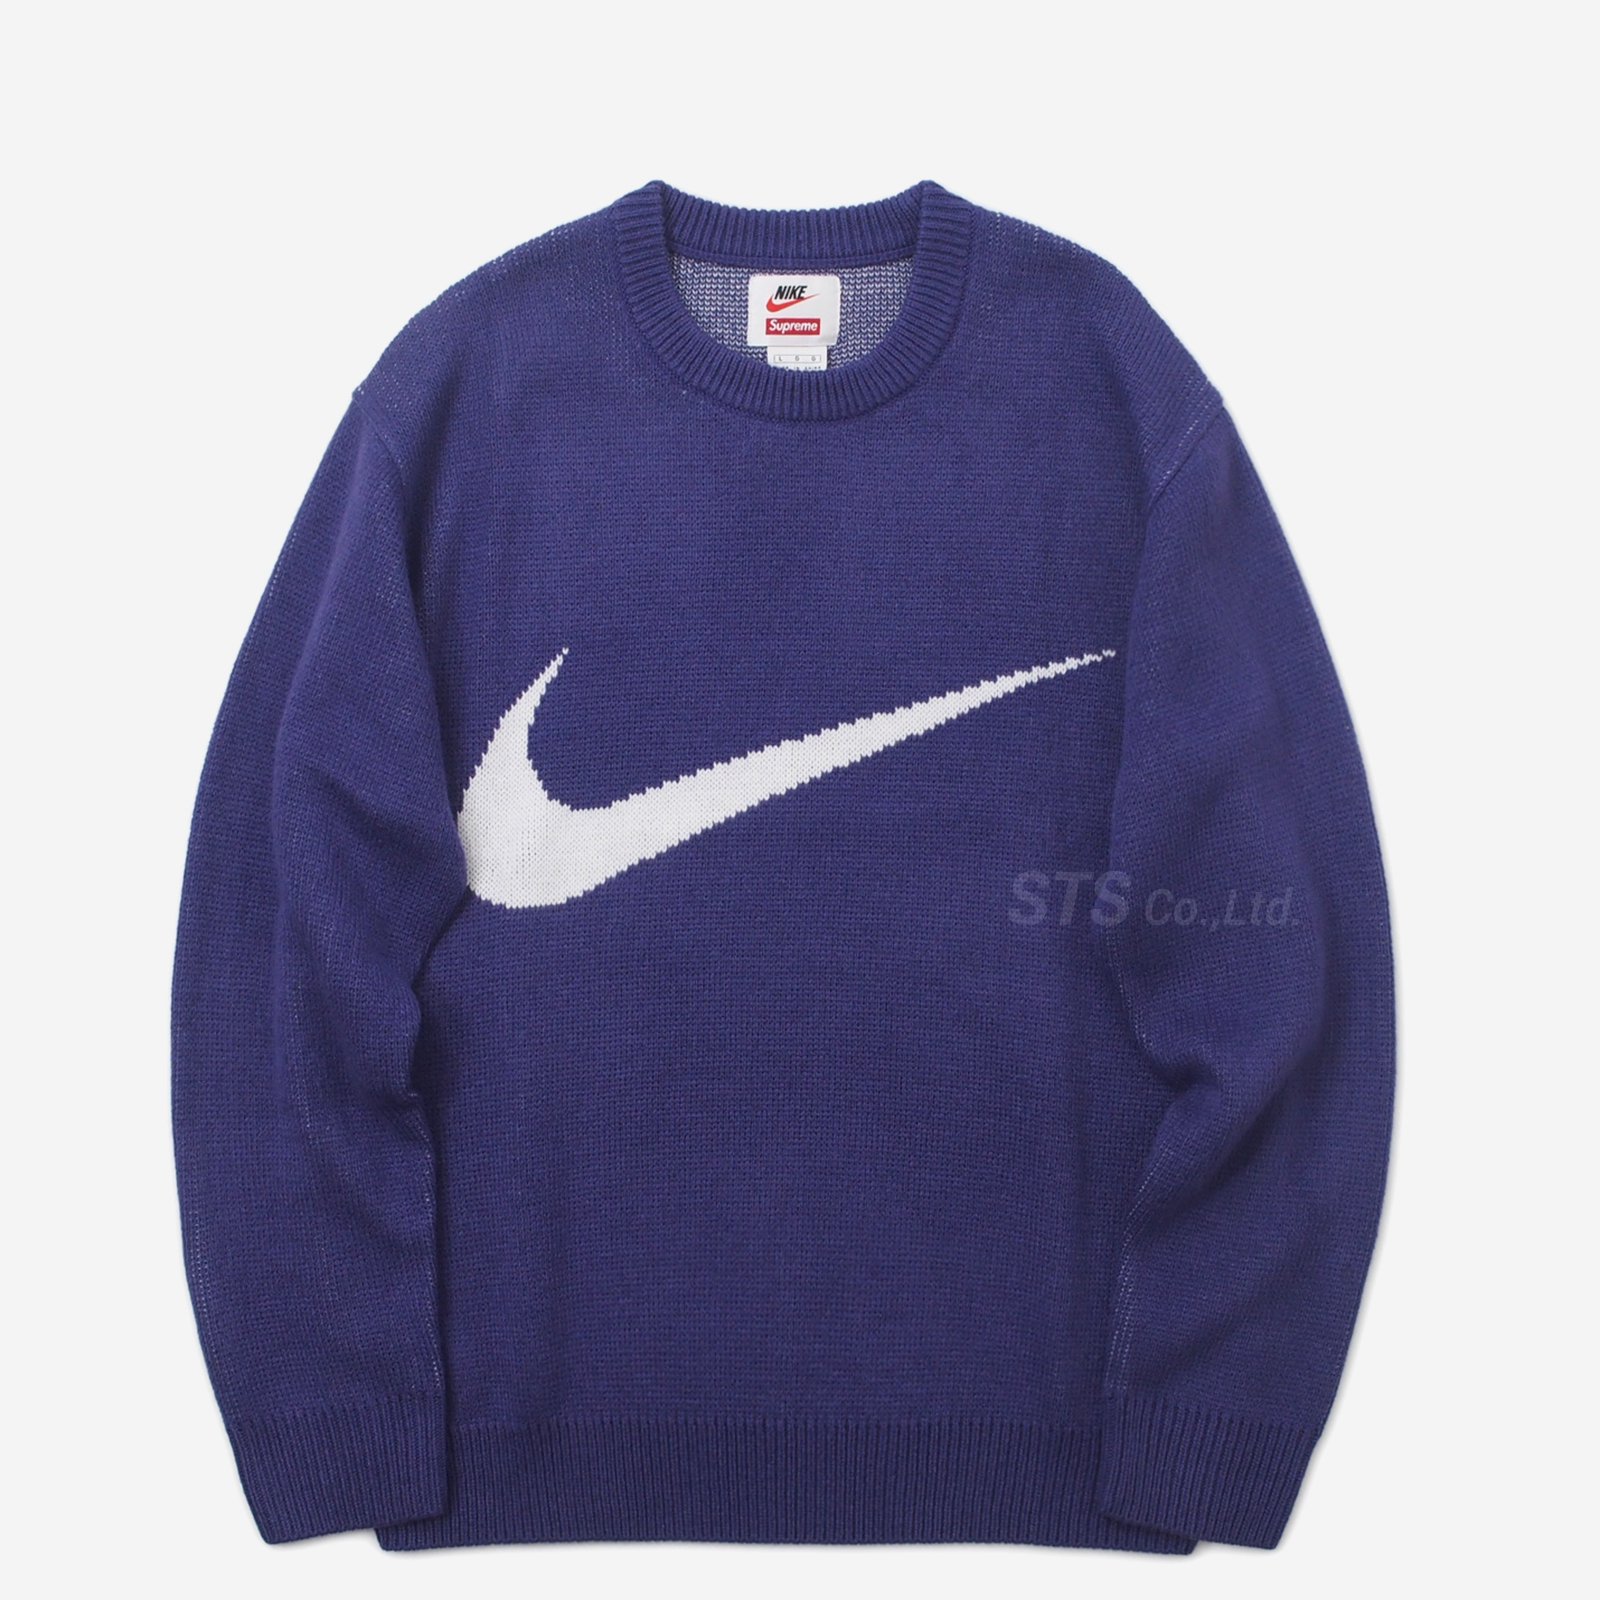 トップスSupreme Nike sweater XL